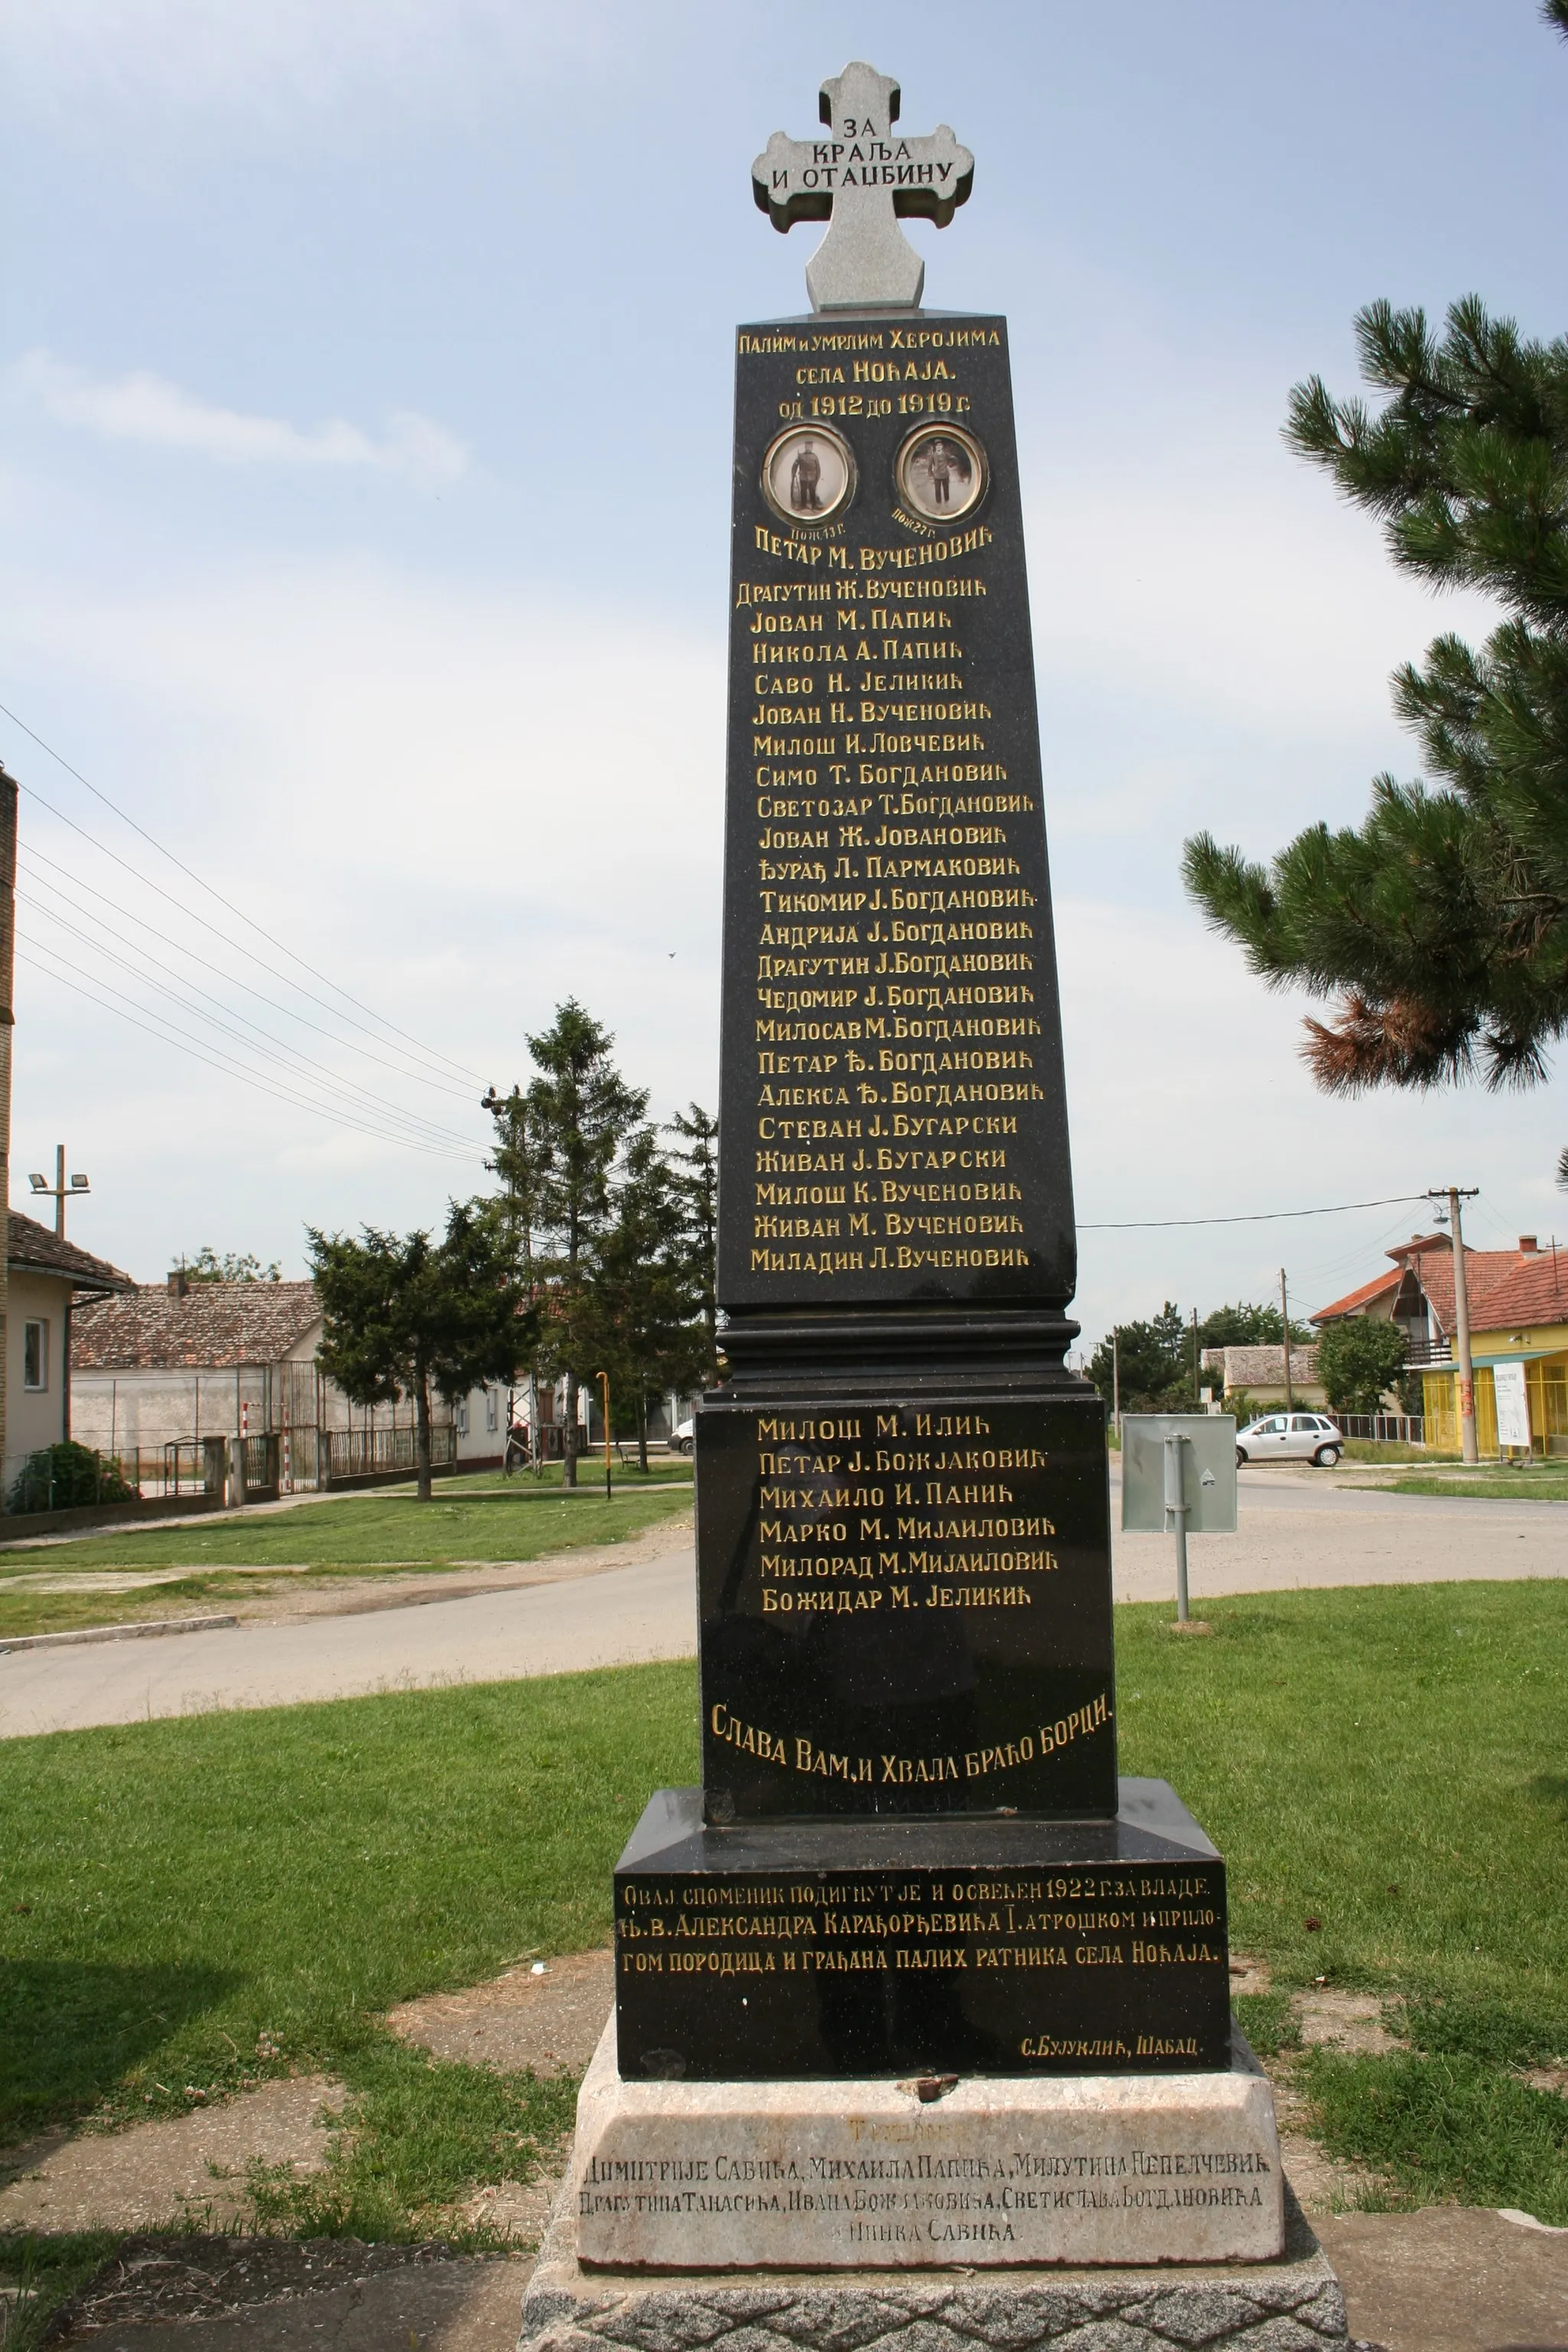 Photo showing: Spomenik u centru sela, Noćaj